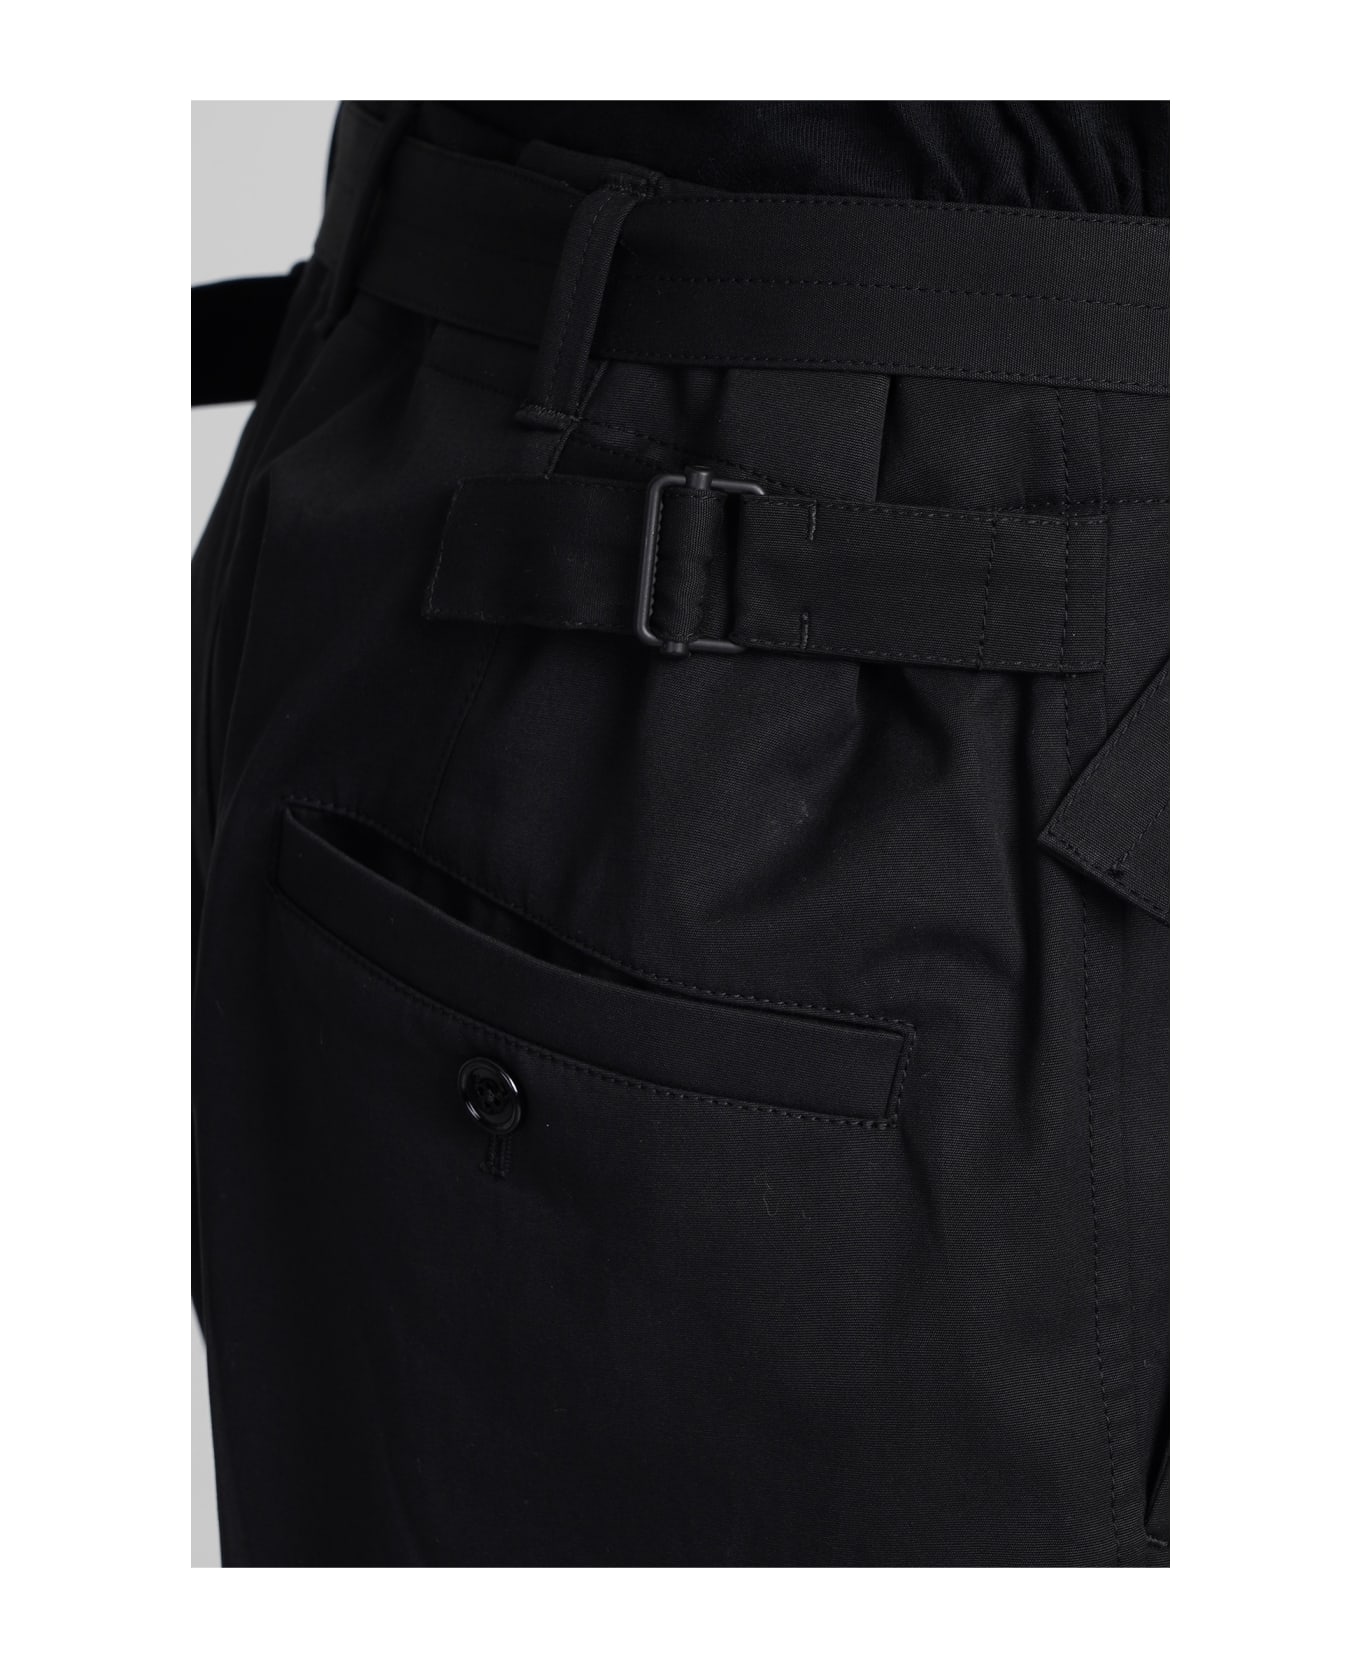 Lemaire Pants In Black Cotton - black